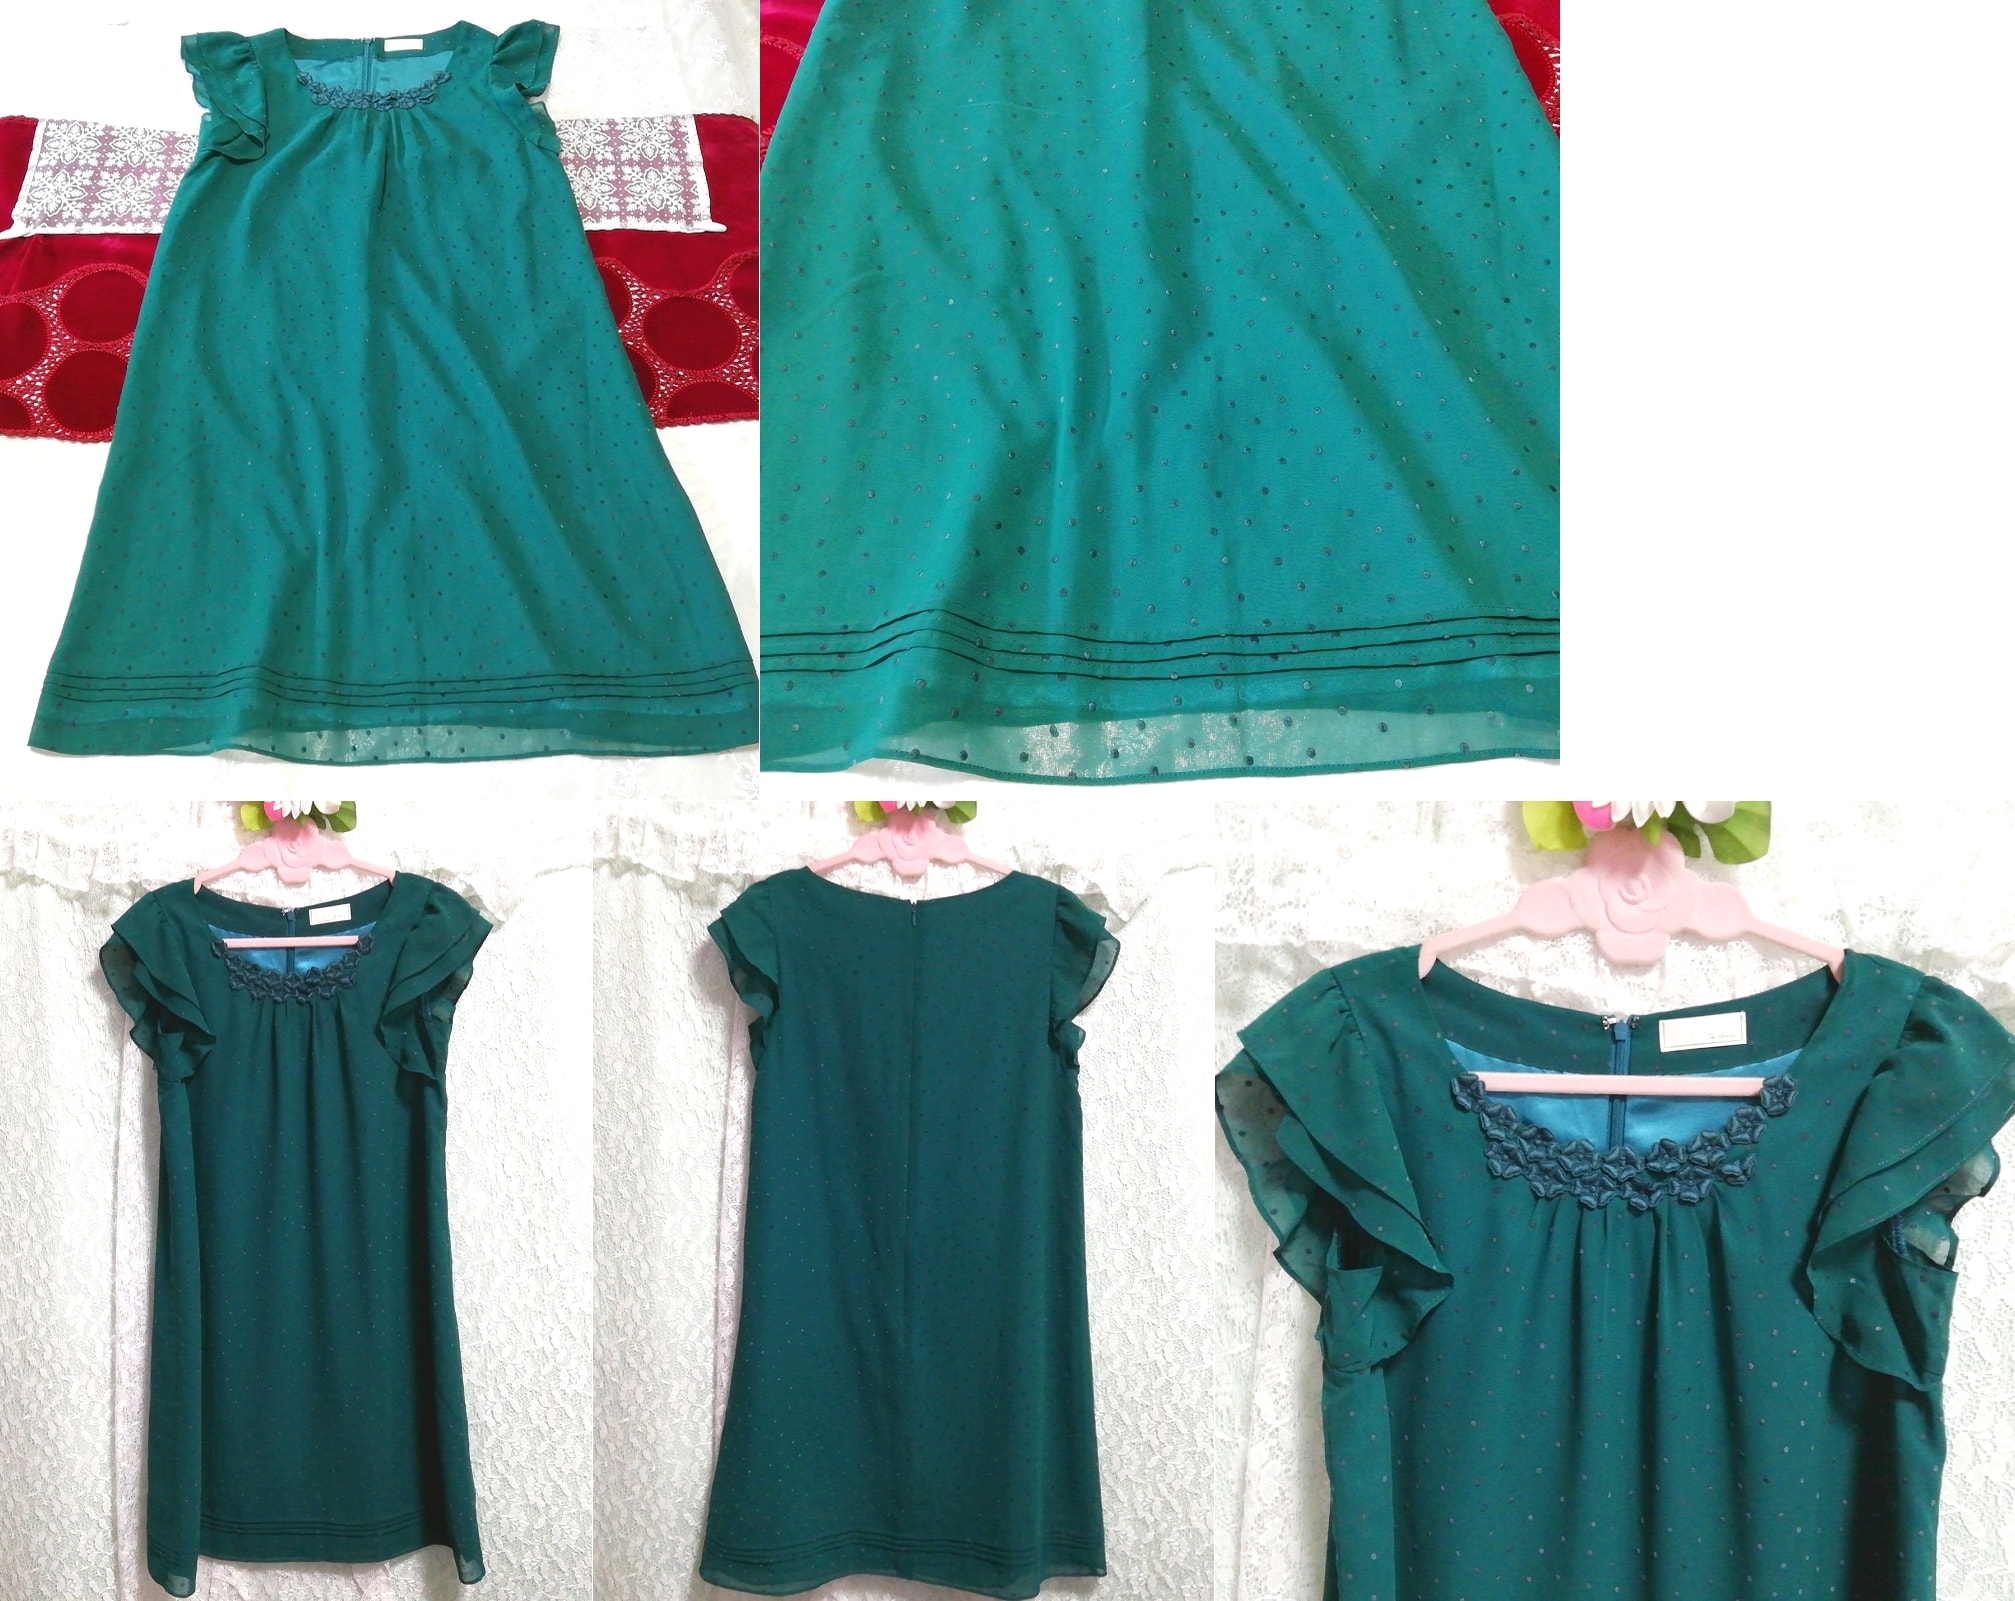 緑フリルシフォンノースリーブチュニック ネグリジェ ワンピースドレス Green ruffle chiffon sleeveless tunic negligee dress, チュニック, 袖なし、ノースリーブ, Mサイズ